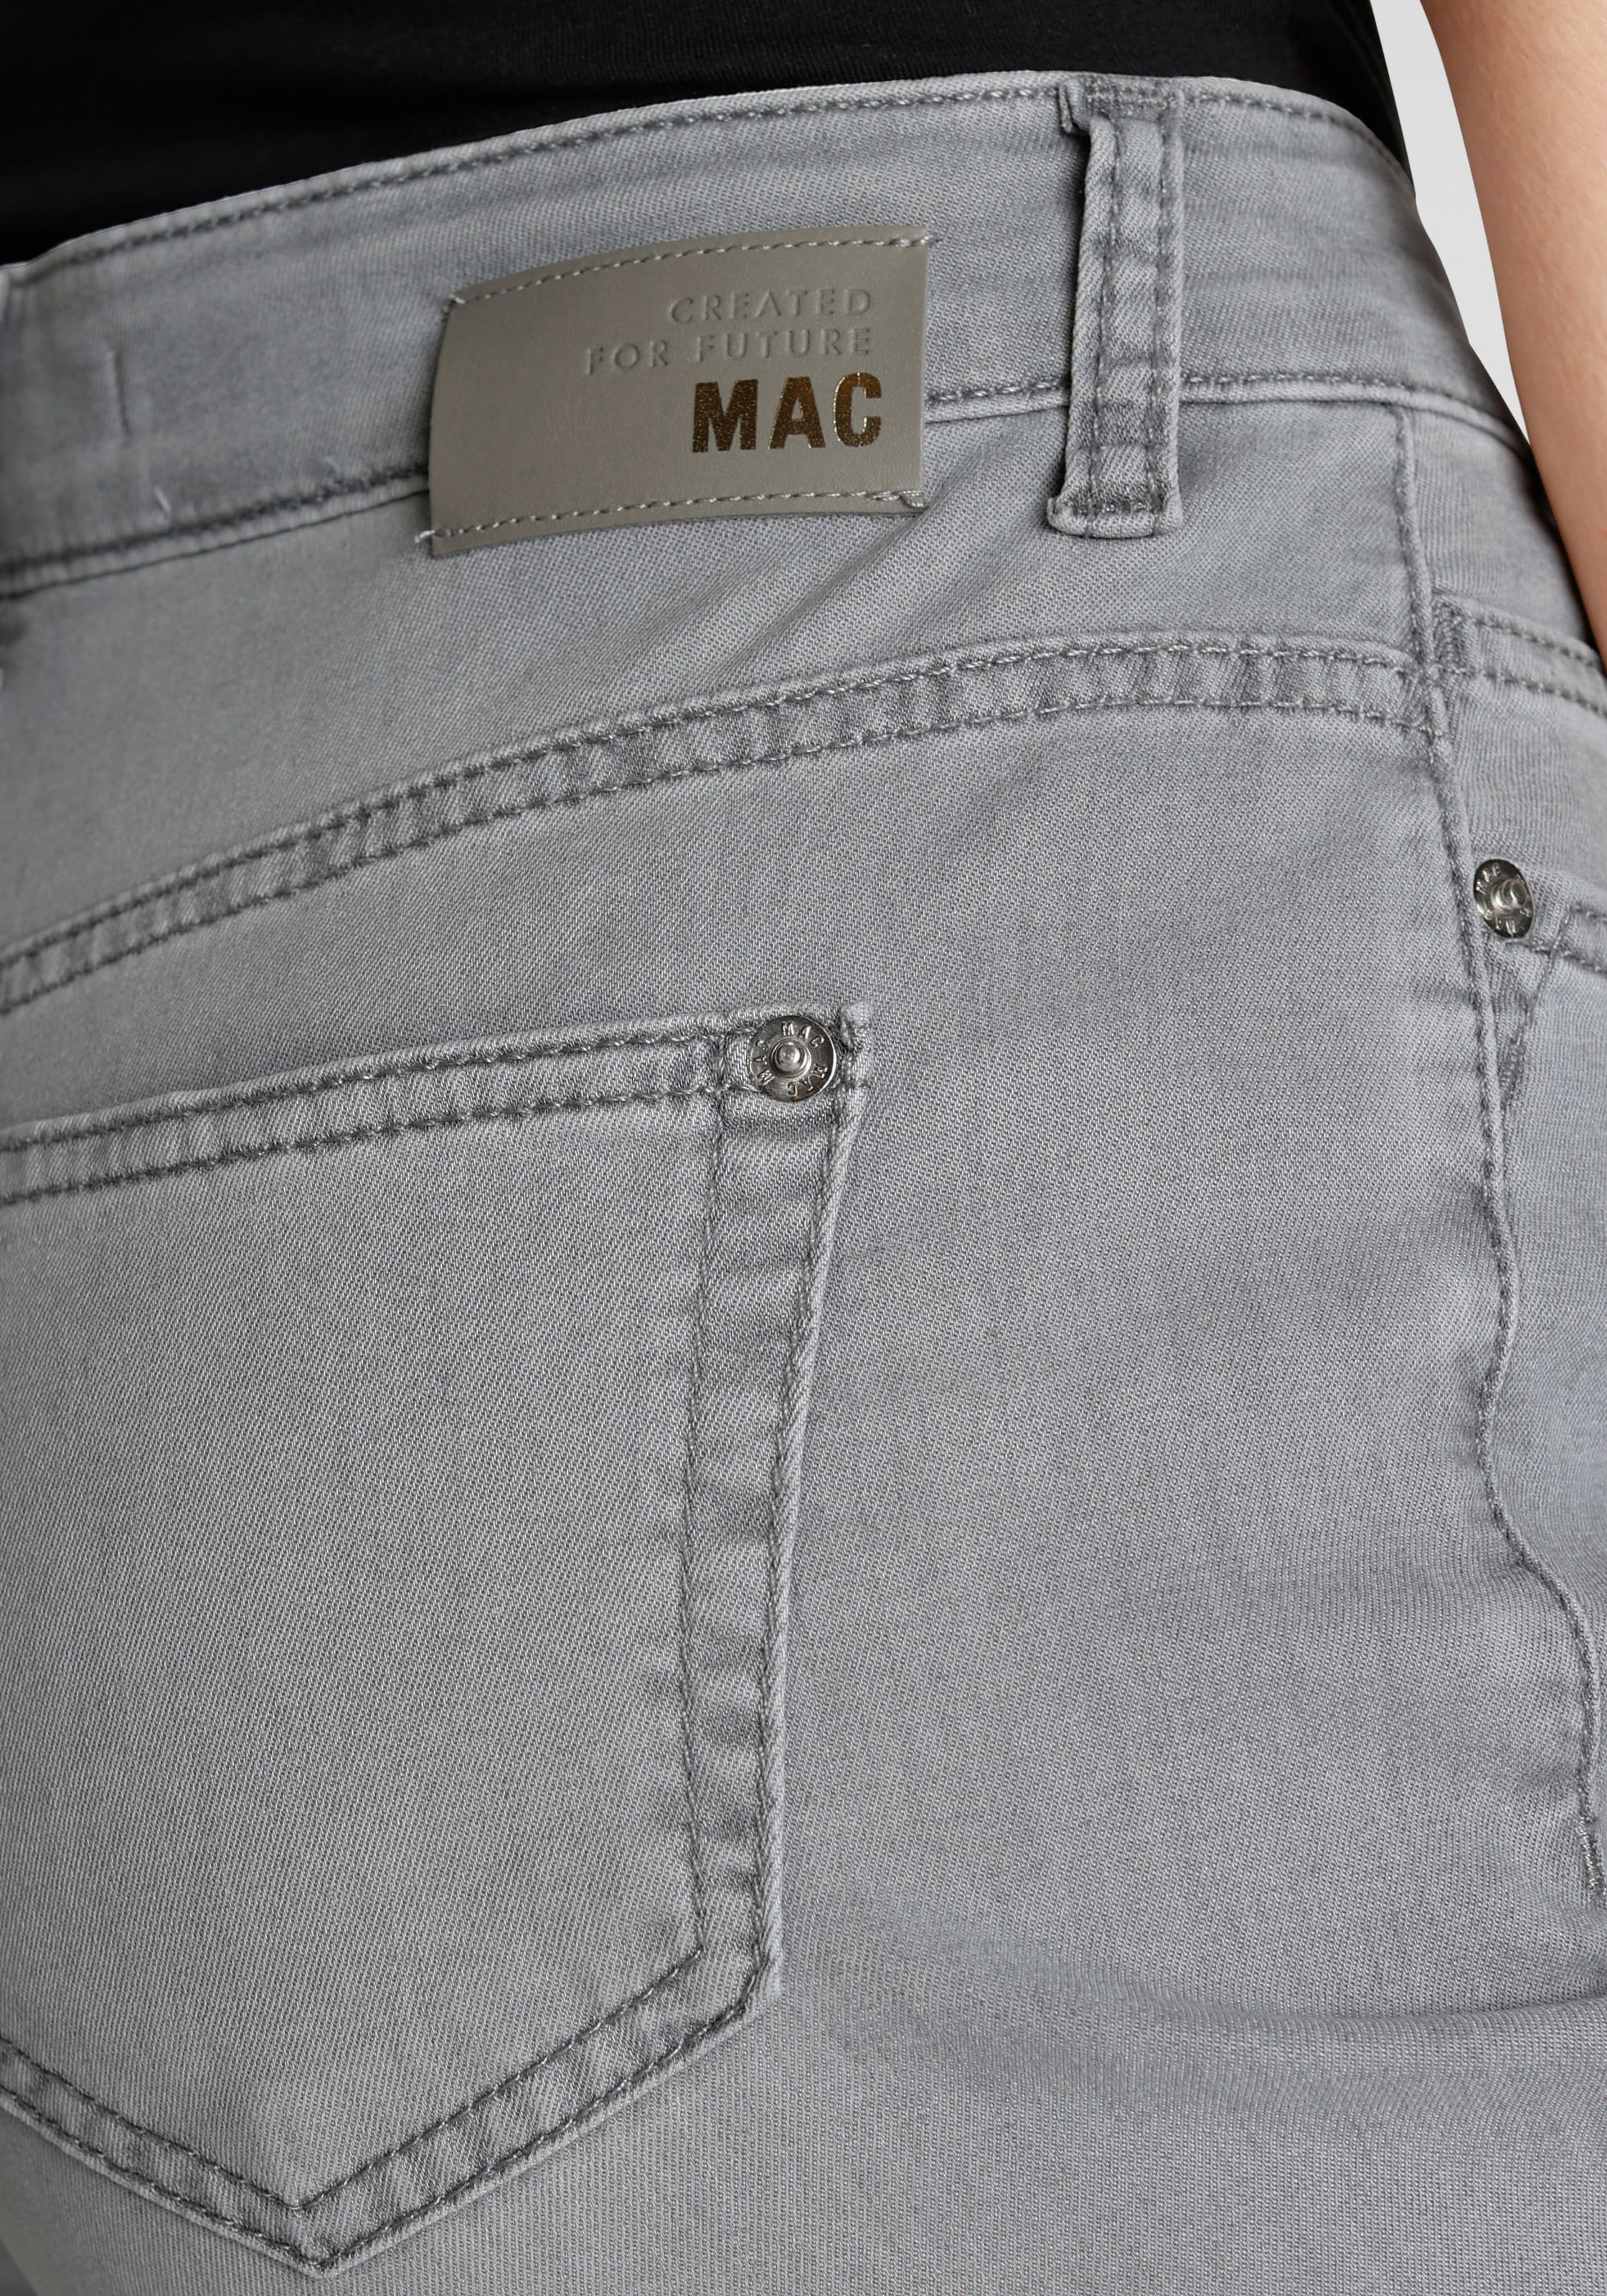 Gerader MAC Beinverlauf kaufen »Stella«, Jeans Bequeme